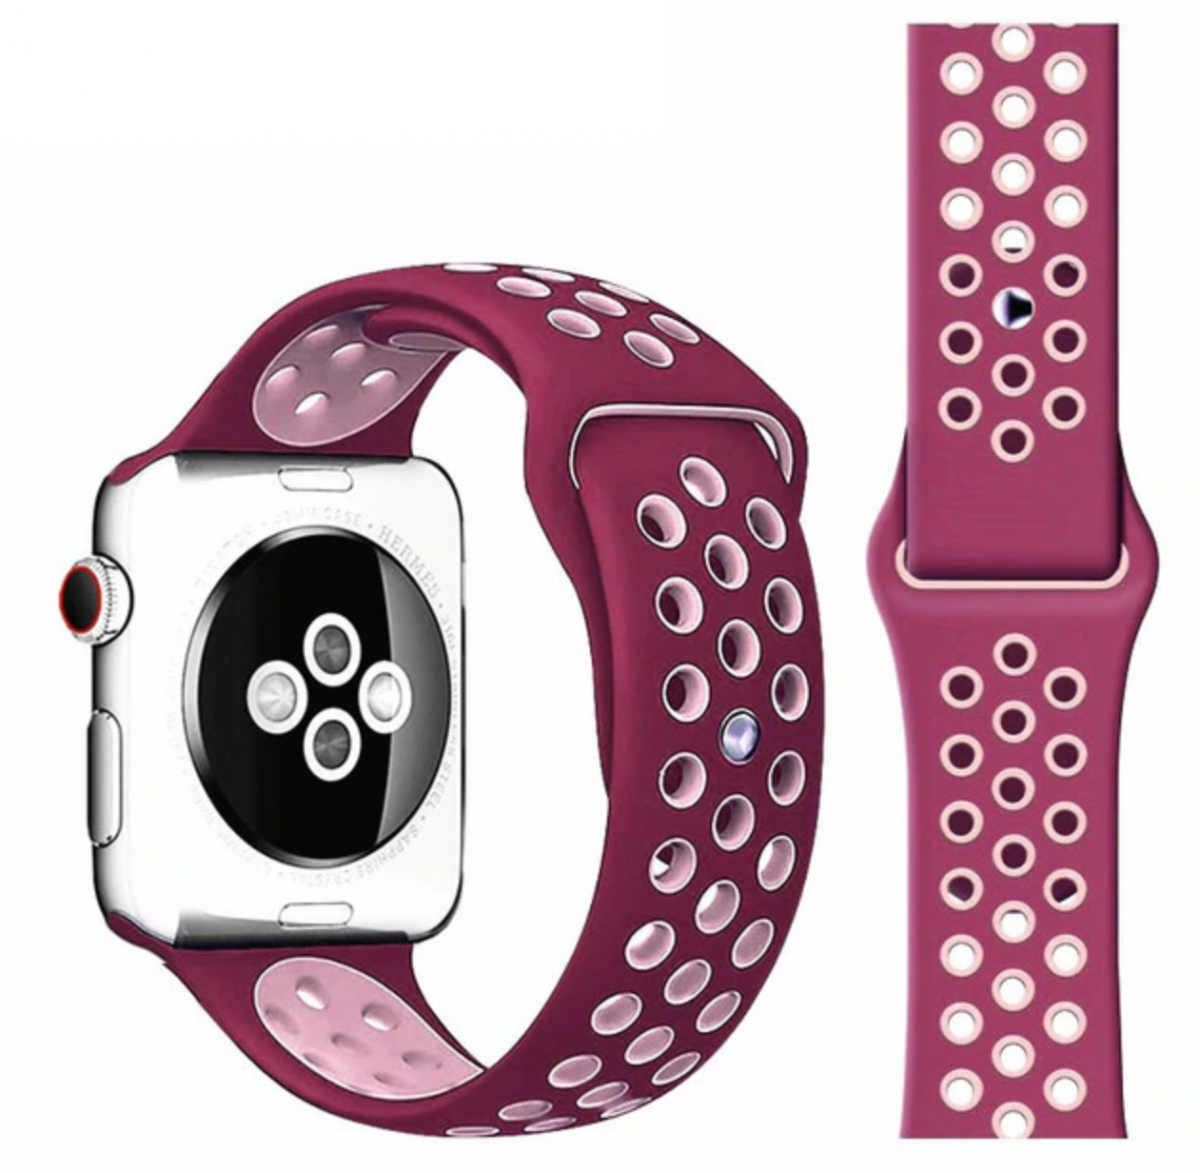 Řemínek iMore SPORT pro Apple Watch Series 4/5/6/SE (44mm) - Vínový/Růžový